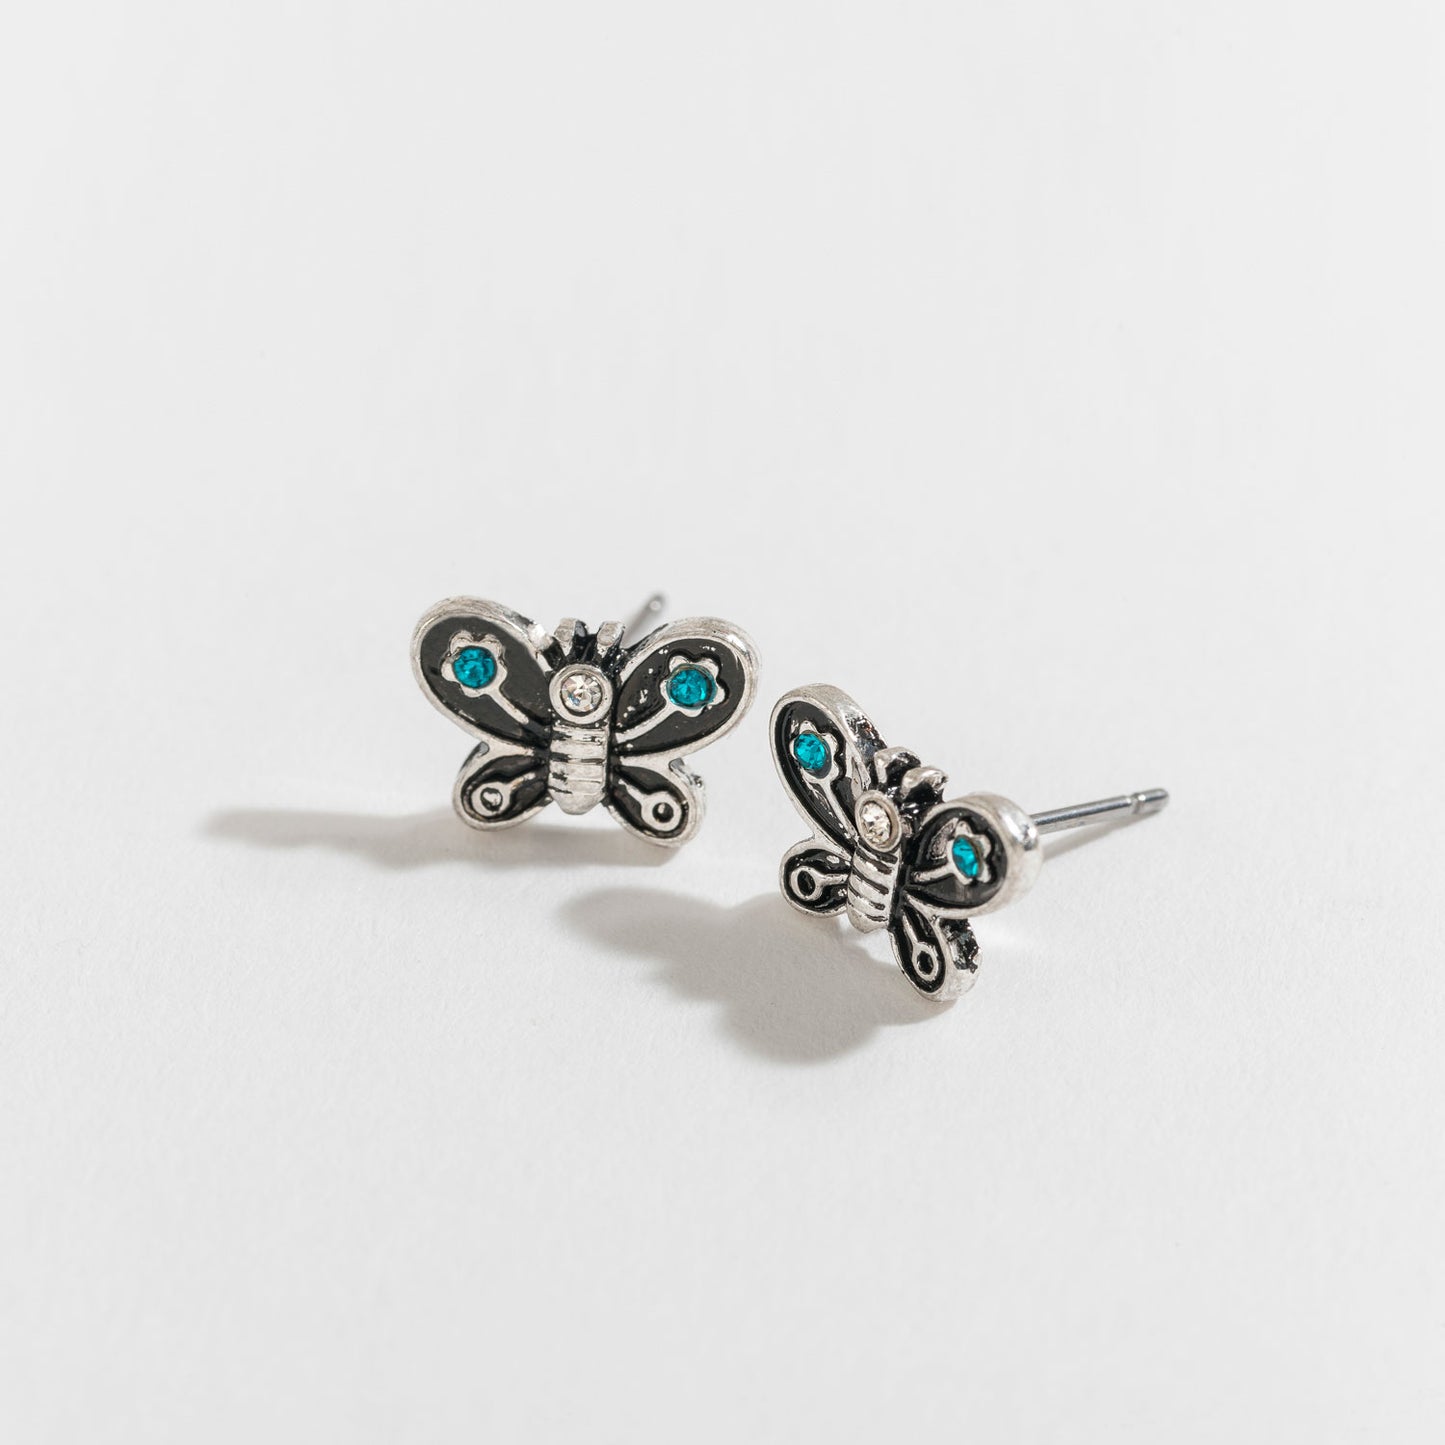 Antique Silver Butterfly Stud Earrings